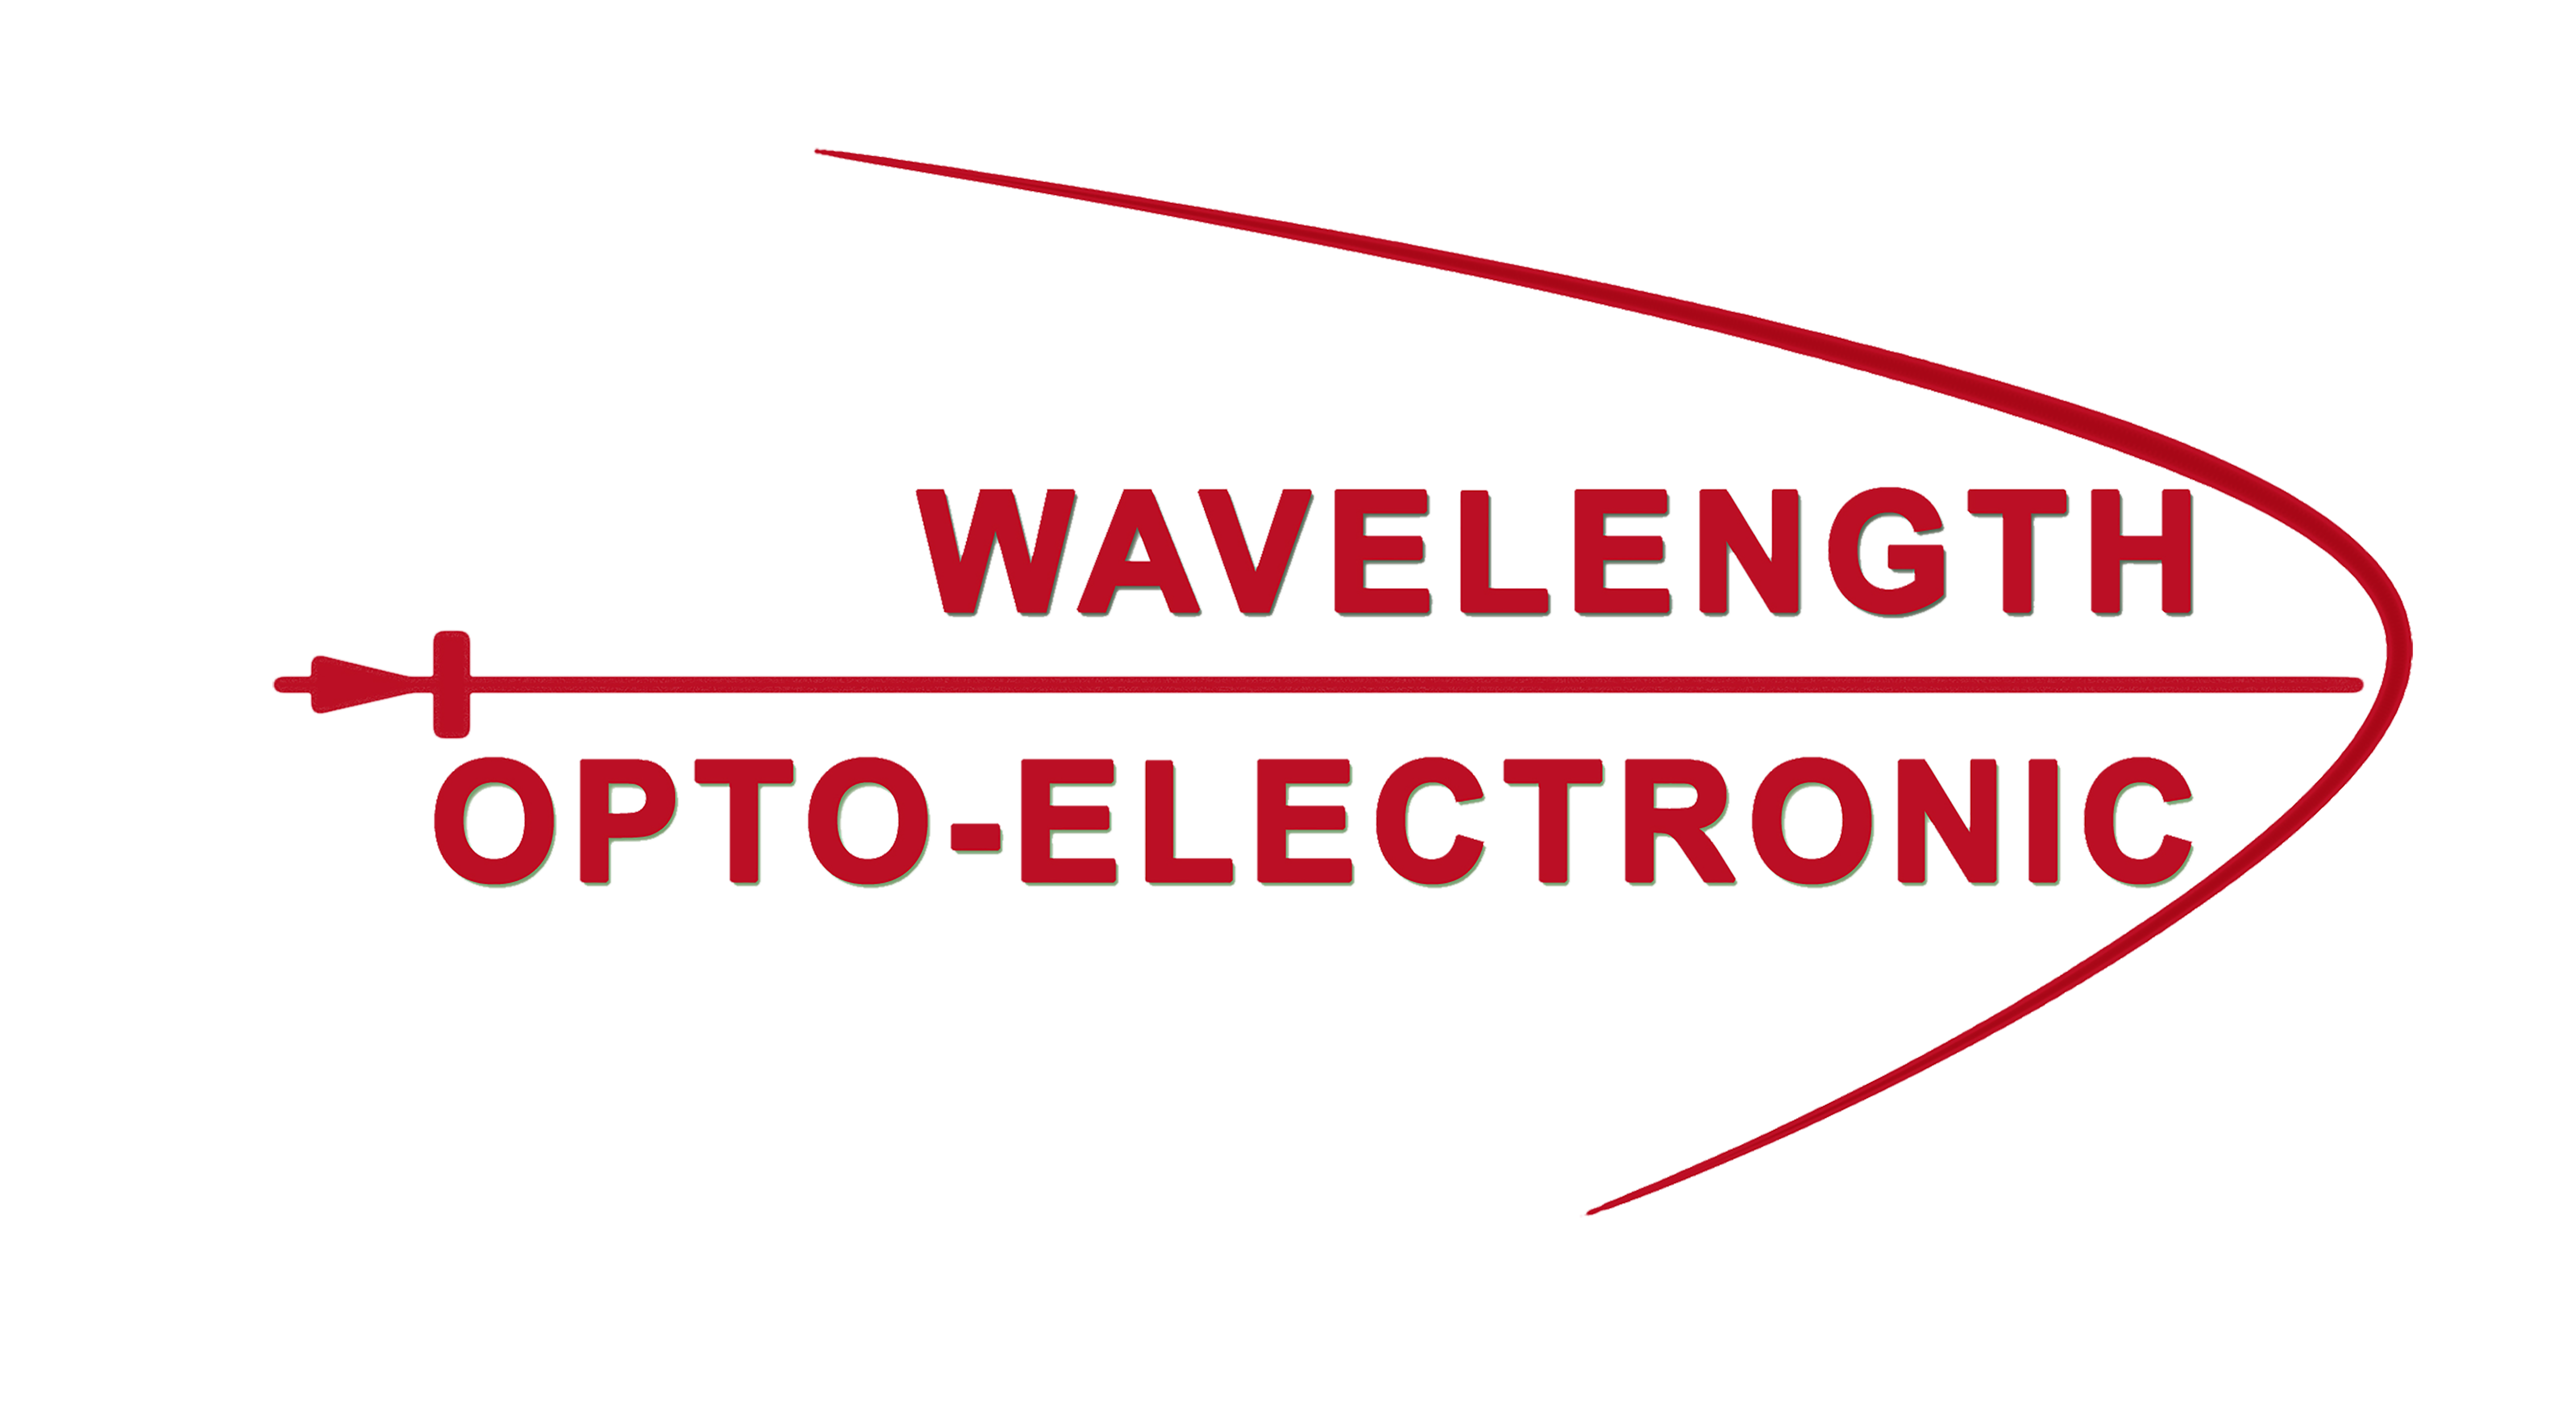 Wavelength Opto-Electronic